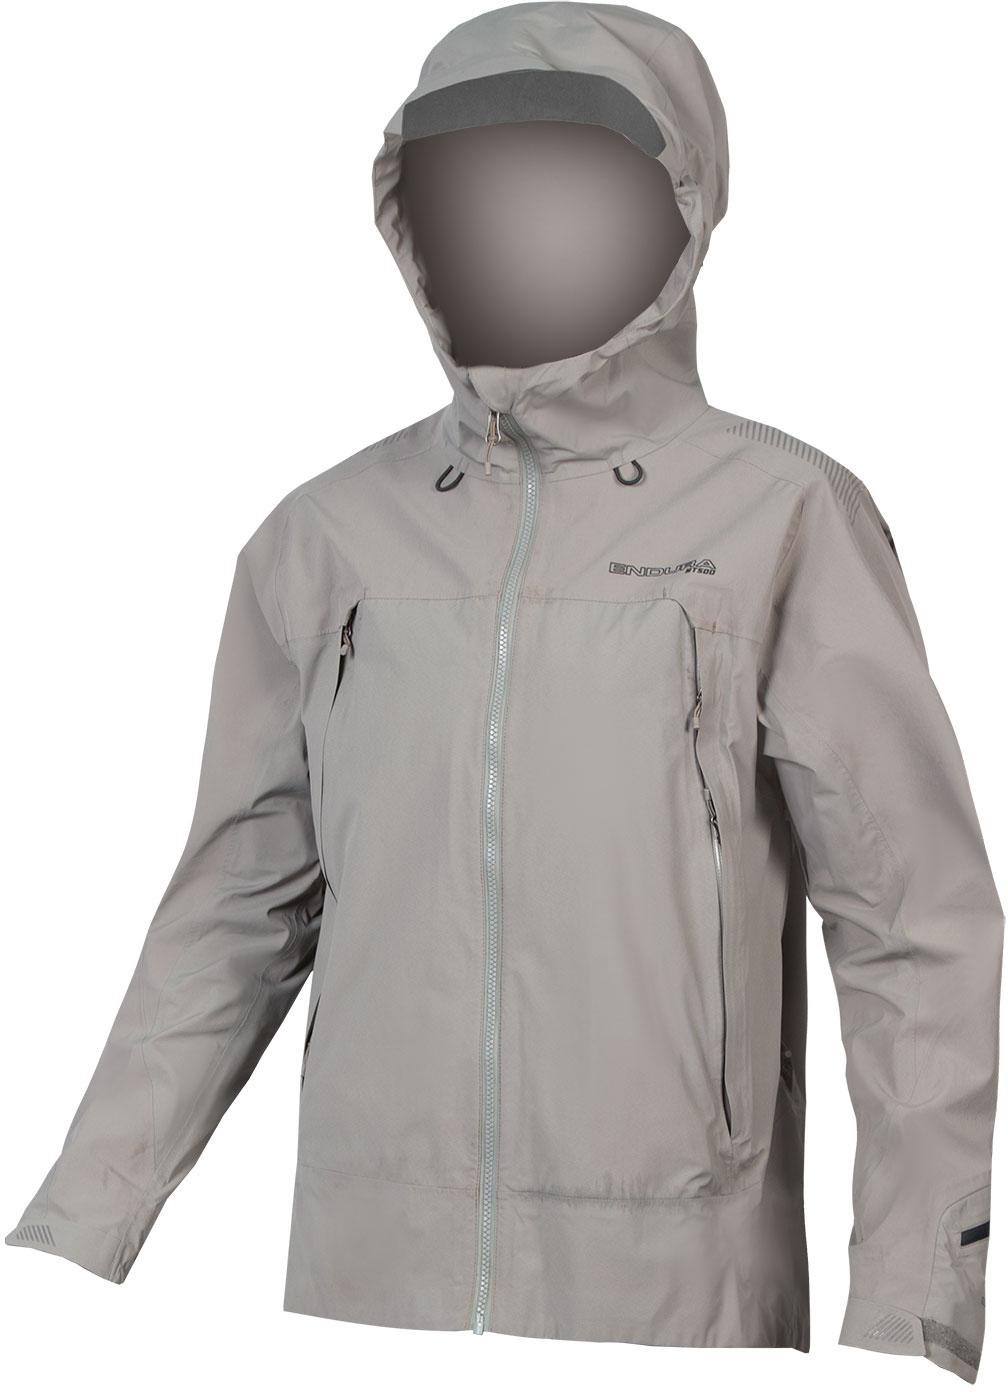 Endura - MT500 II | bike jacket